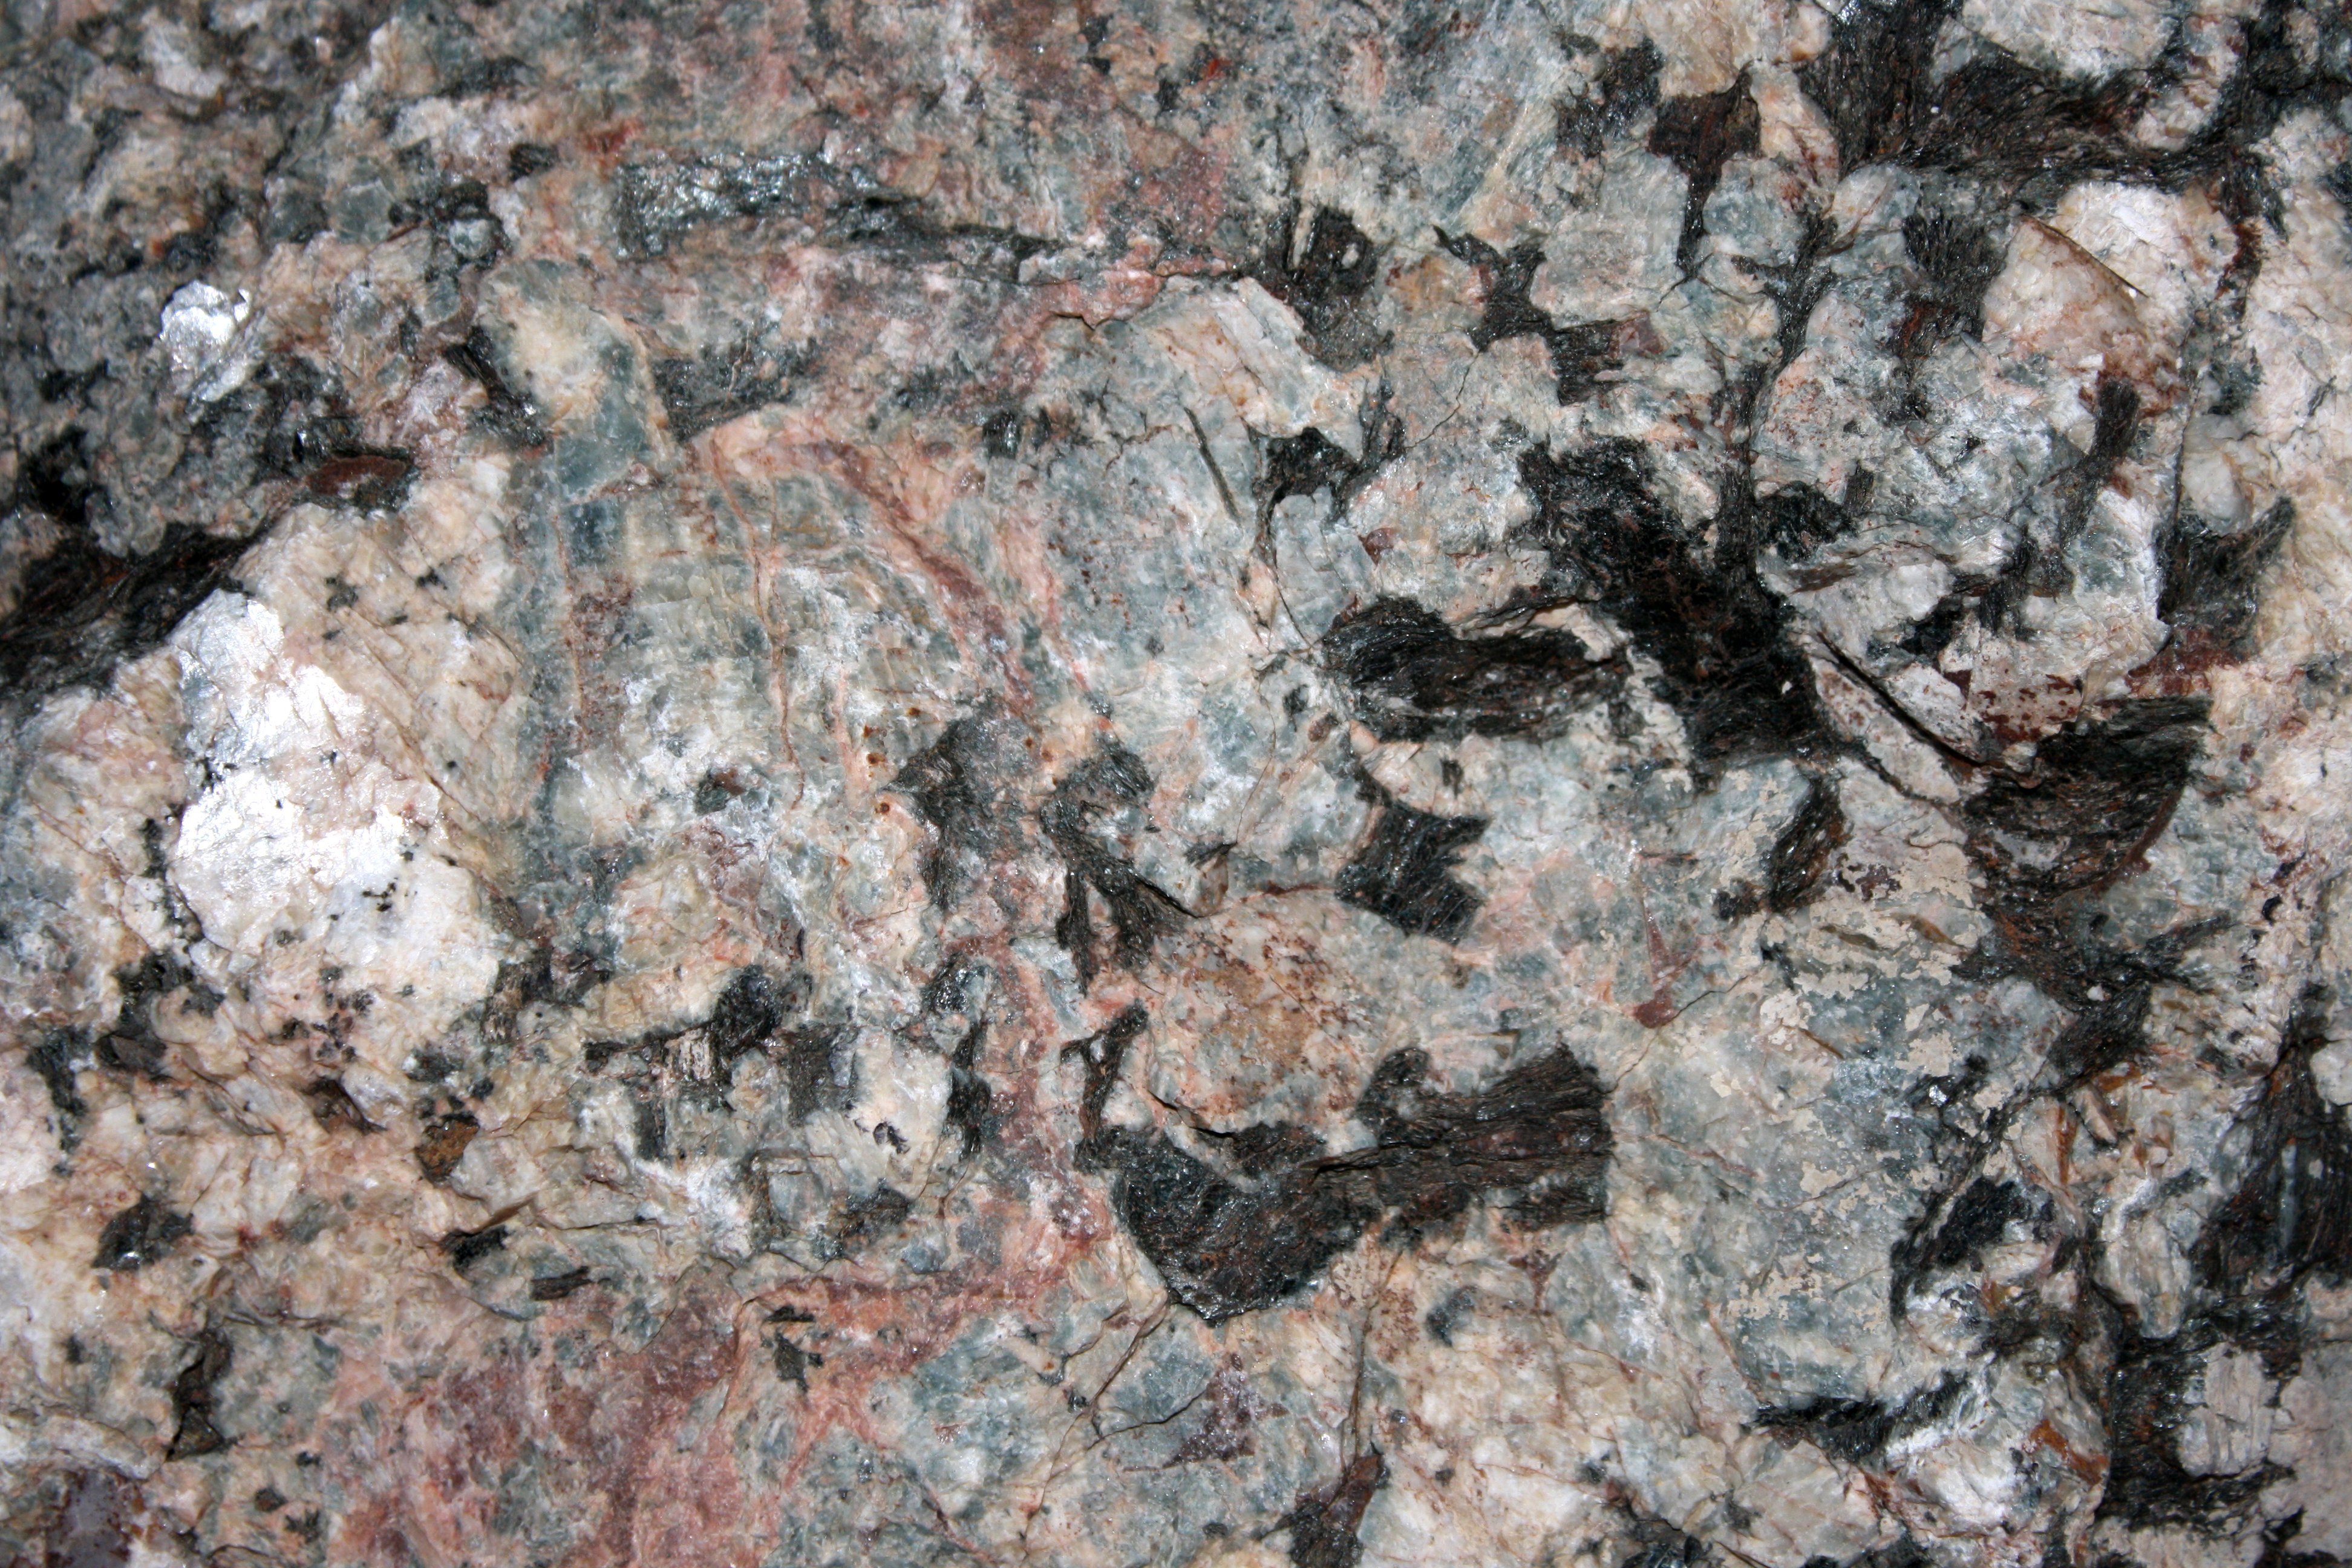 Pegmatite Rock Texture with Feldspar, Mica and Quartz Crystals ...